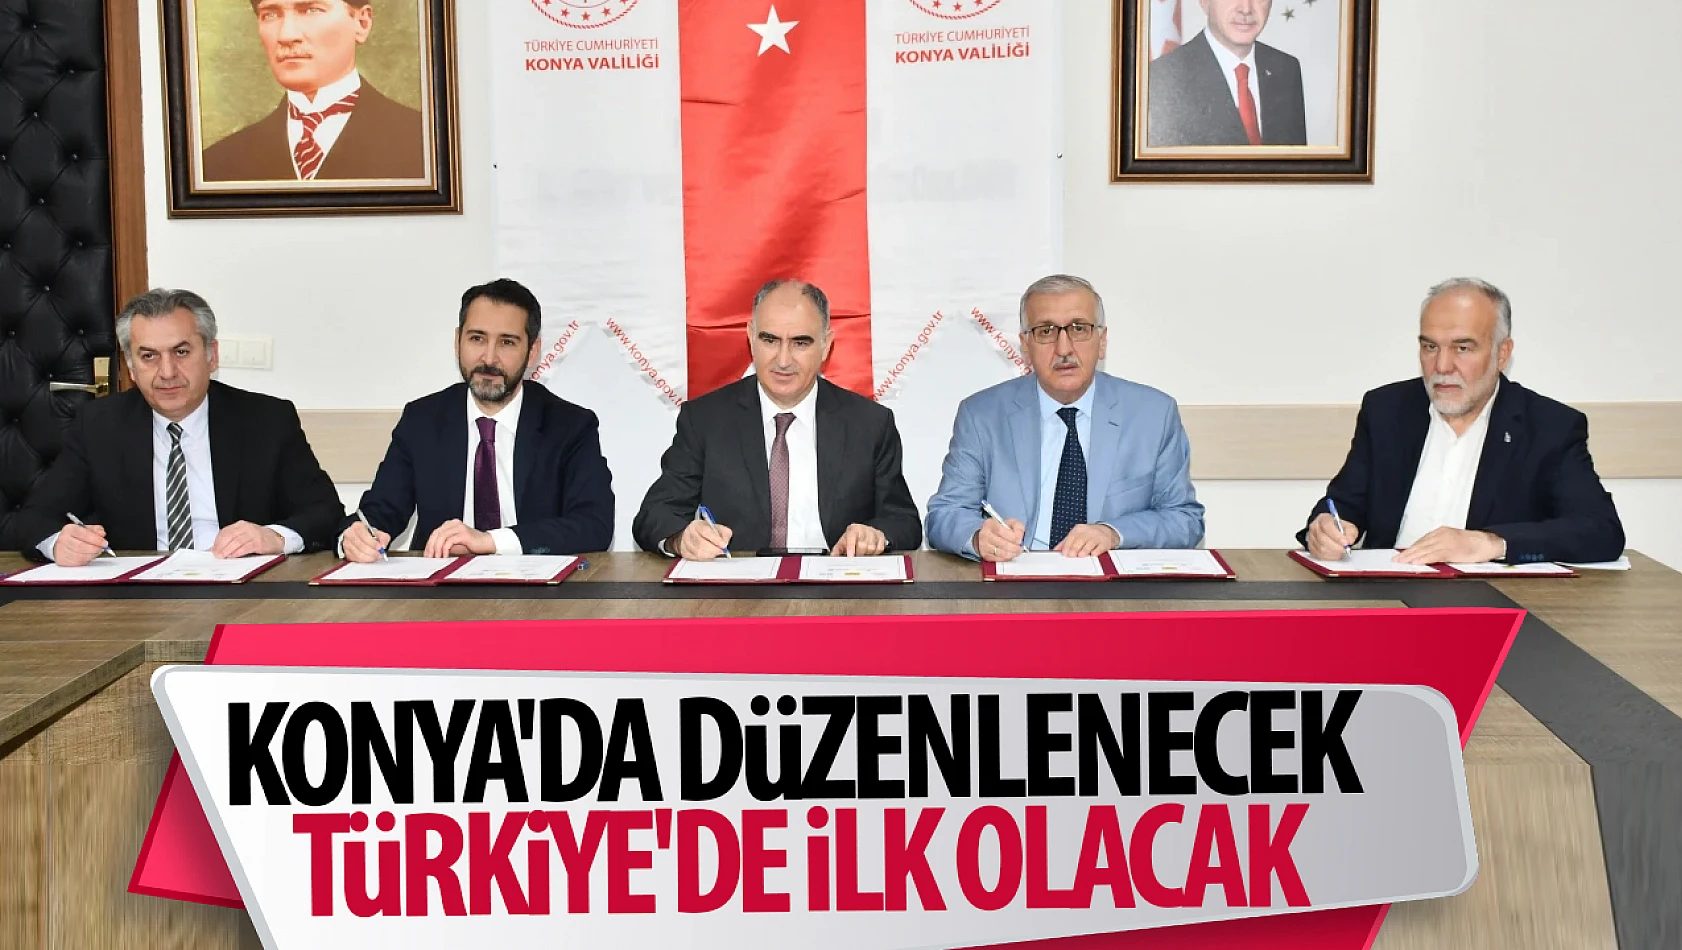 Konya'da düzenlenecek Türkiye'de ilk olacak